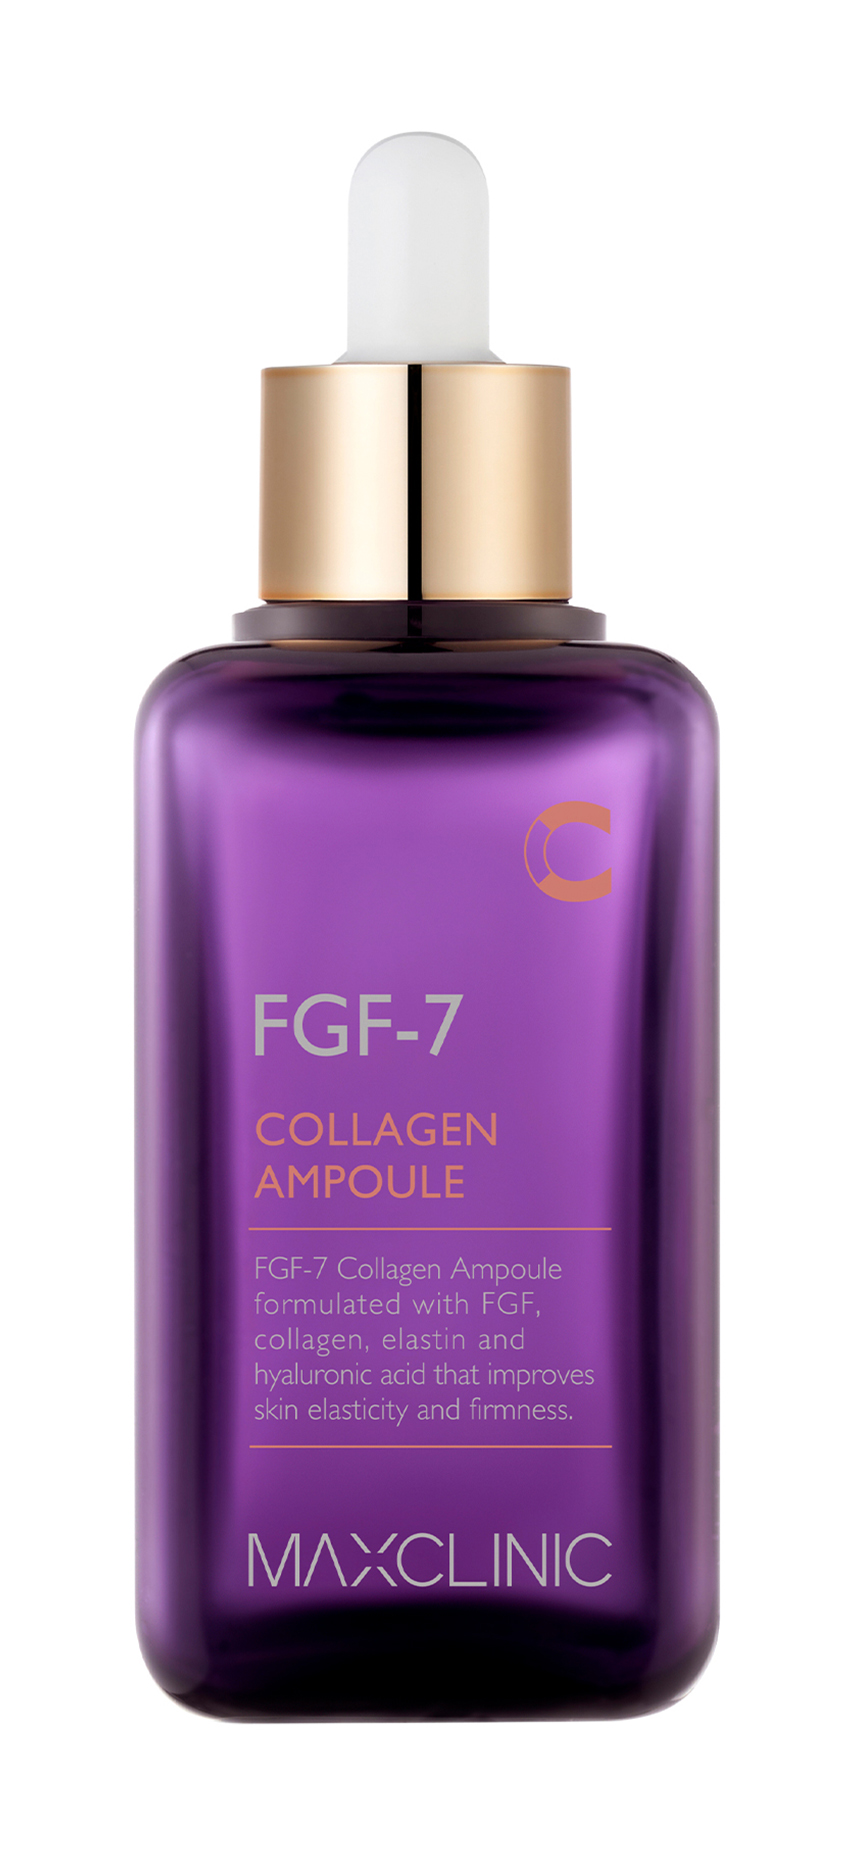 Высококонцентрированная антивозрастная эссенция Maxclinic FGF-7 Collagen Ampoule 100 мл